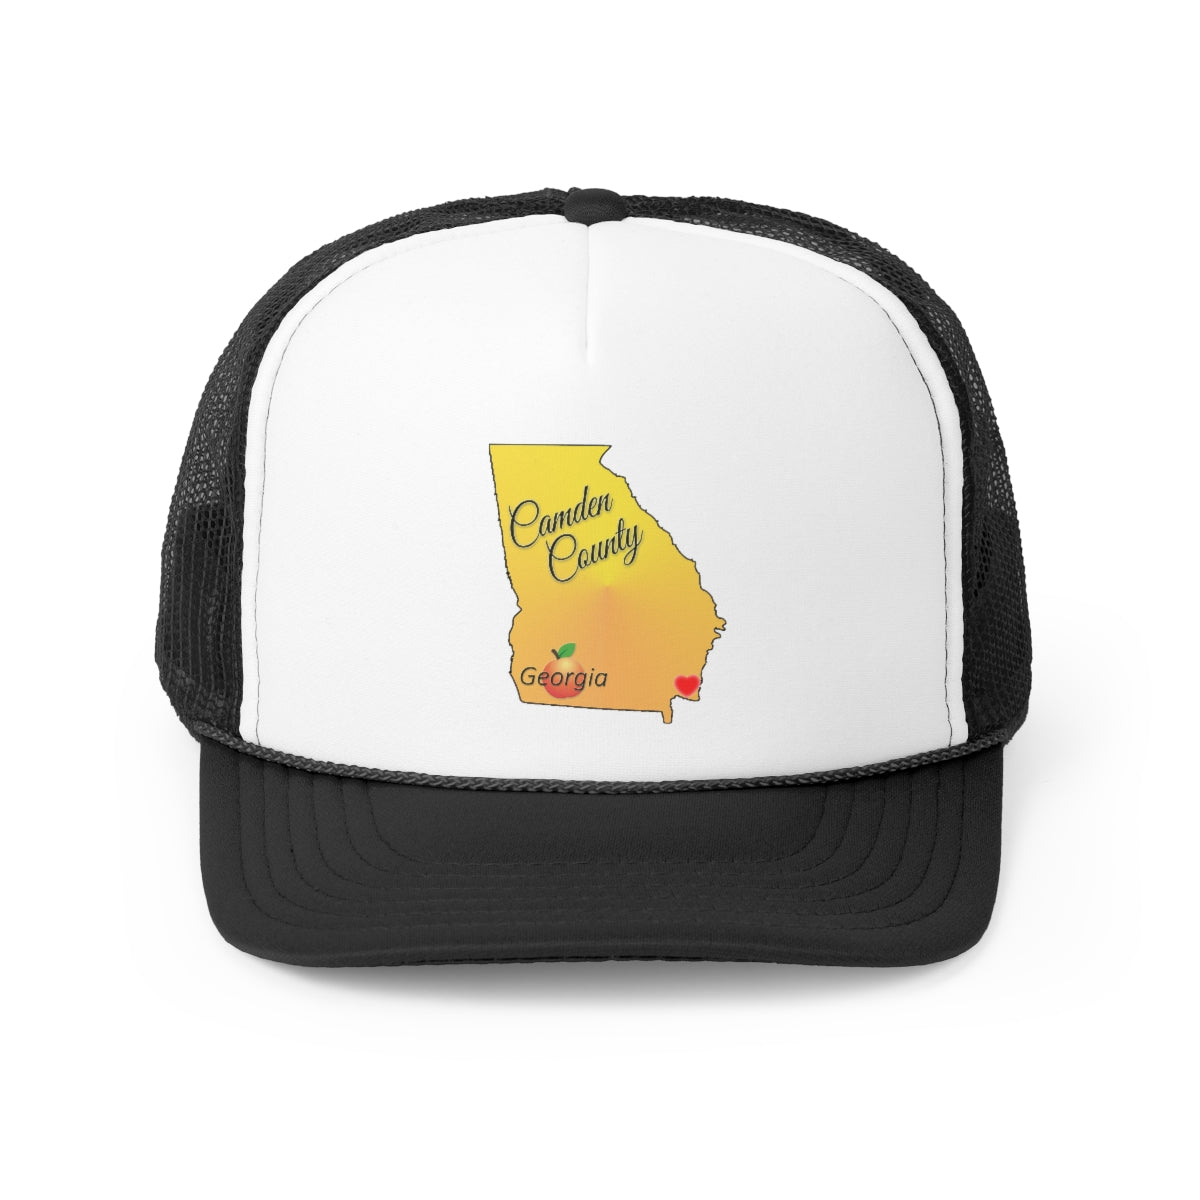 Camden County Georgia Trucker Cap